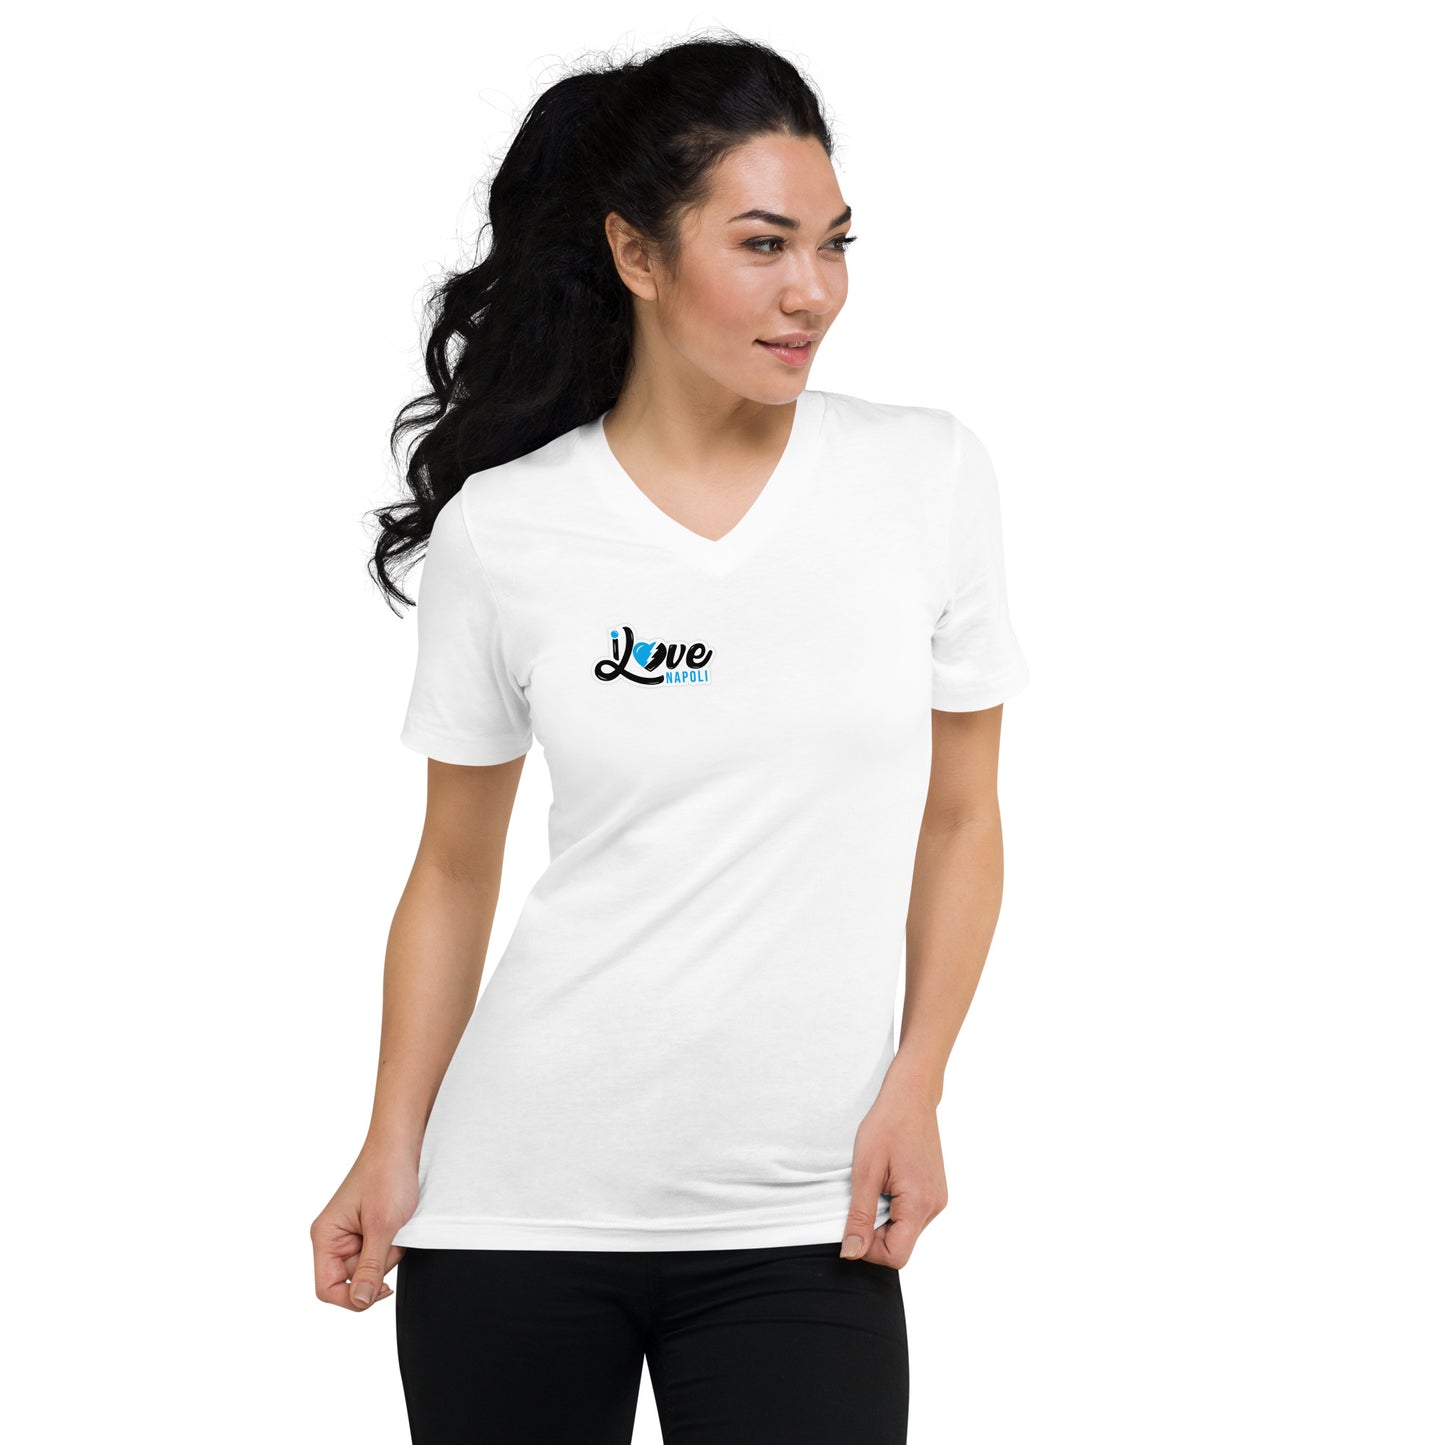 Kurzärmeliges Unisex-T-Shirt mit V-Ausschnitt - i love napoli - schwarz oder weiß